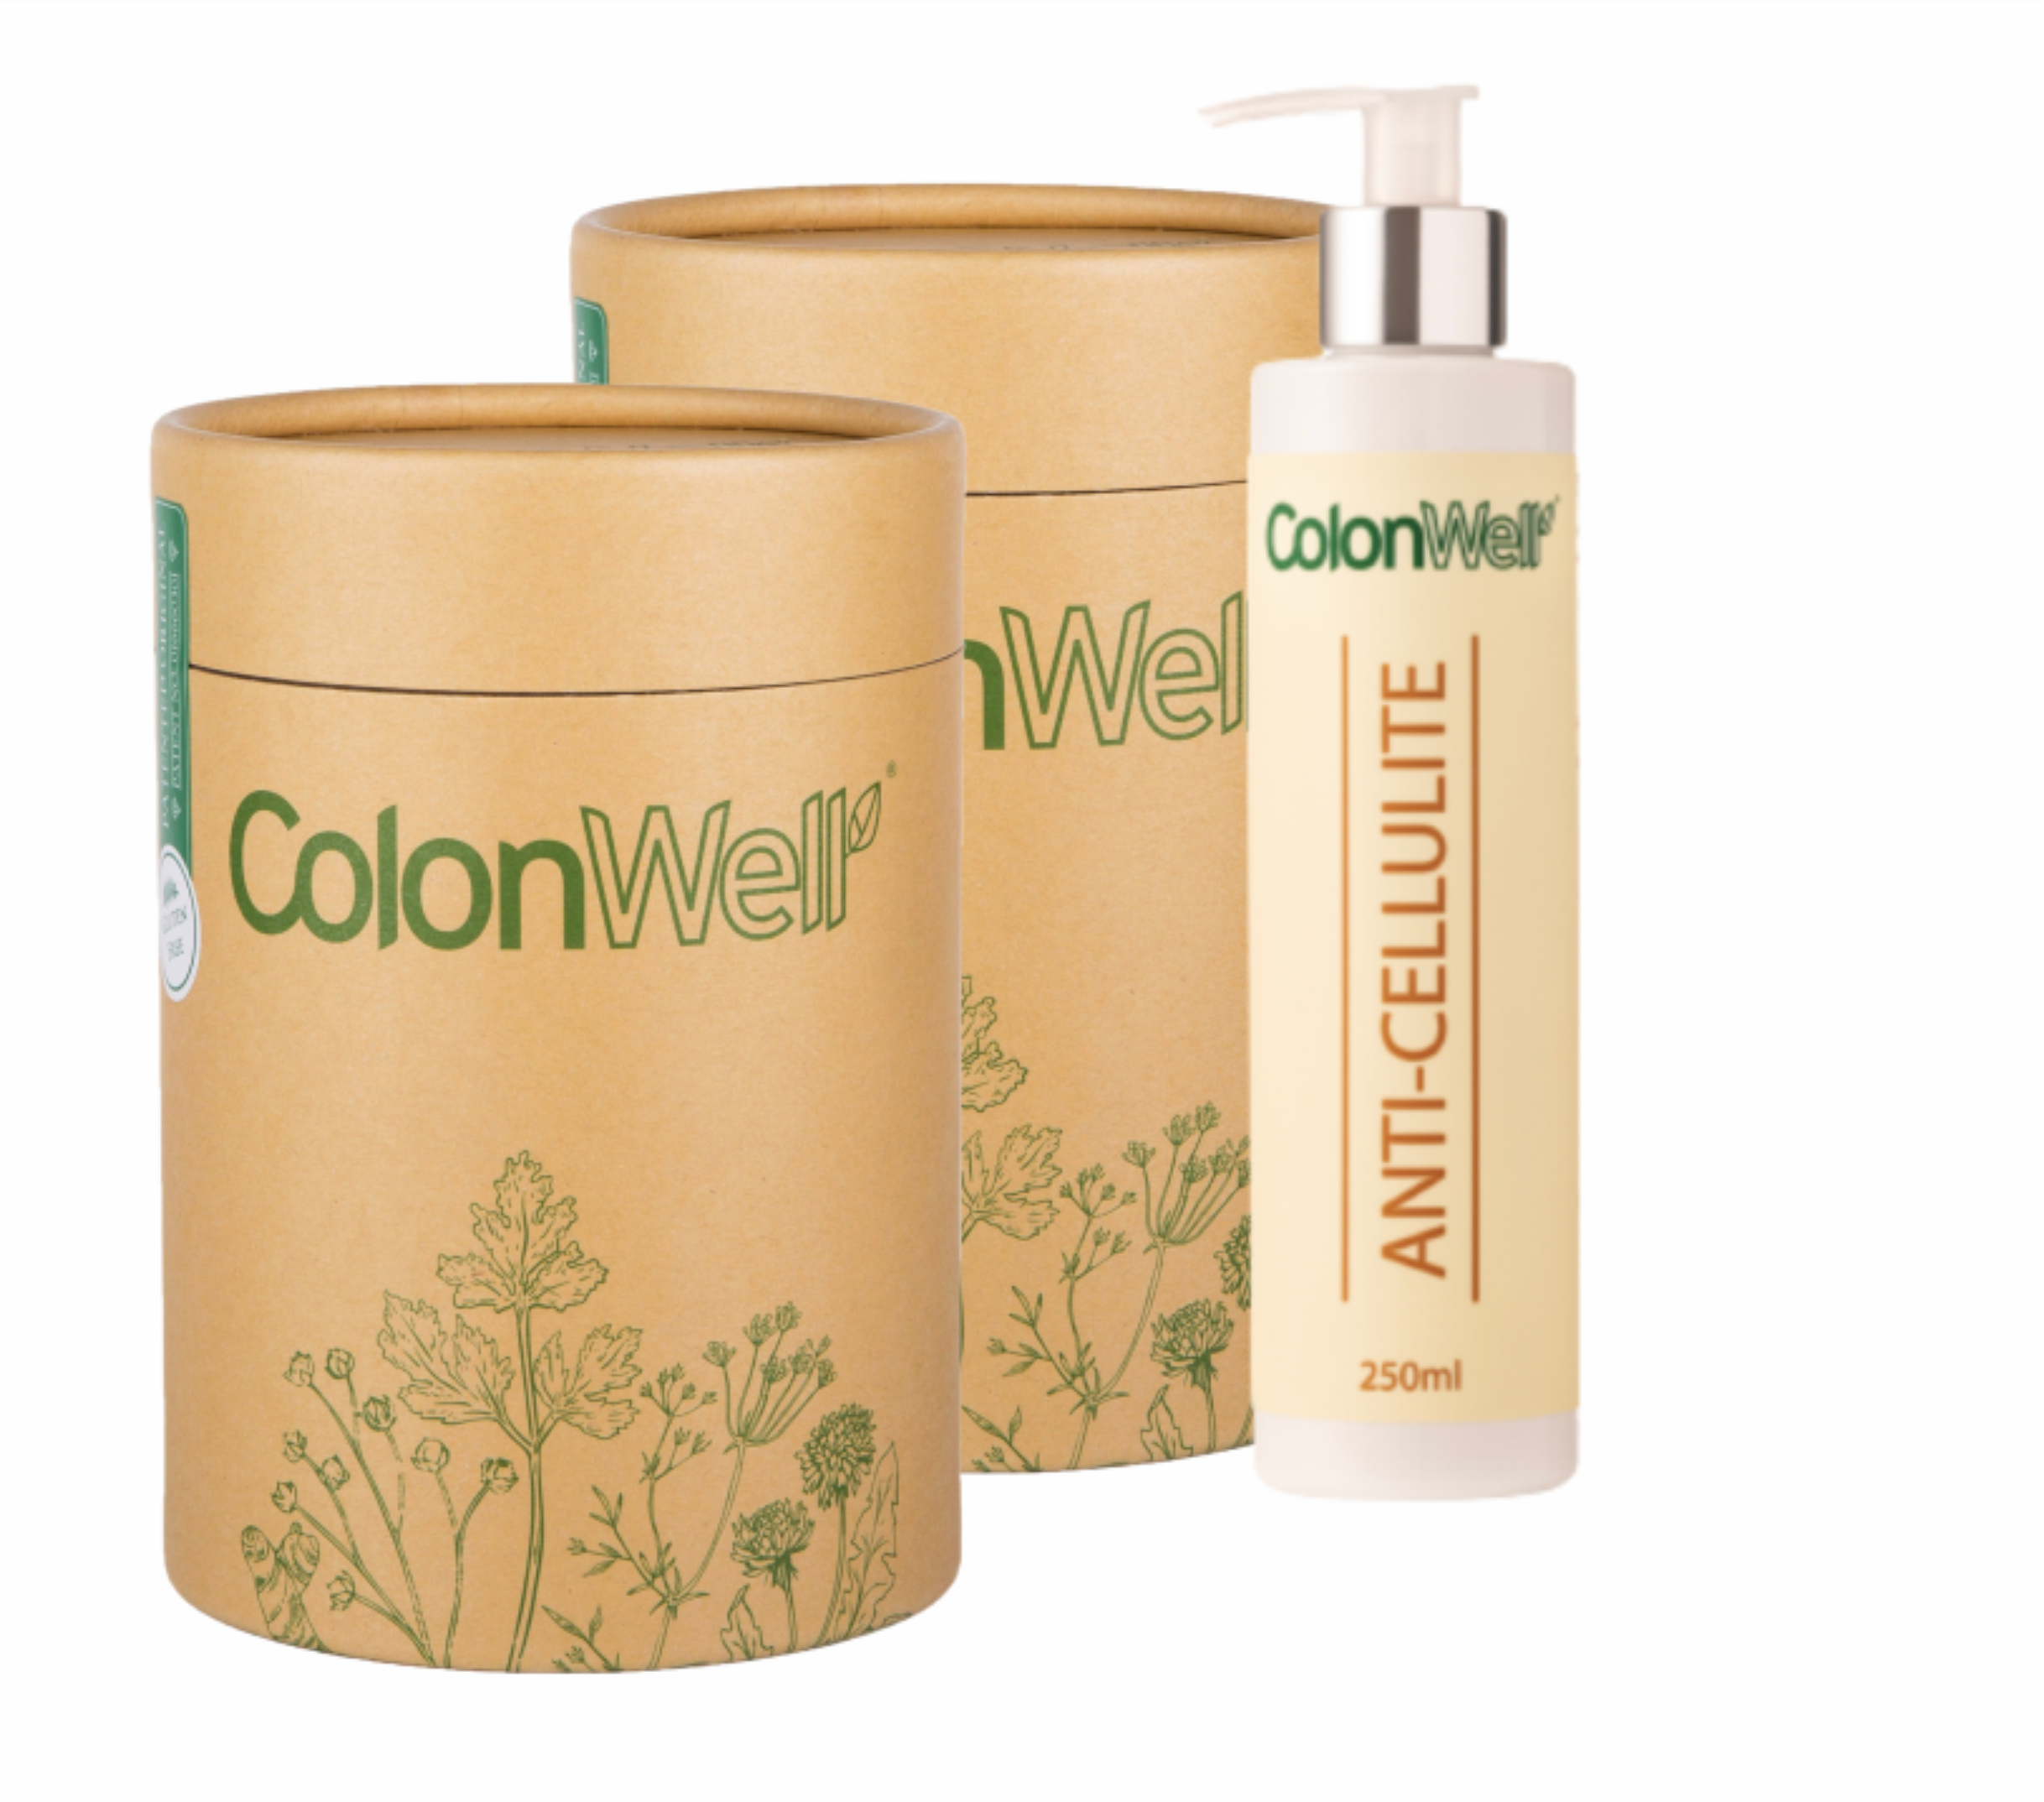 Colonwell.lt produktas - 2vnt. ColonWell + Anticeliulitinis kremas